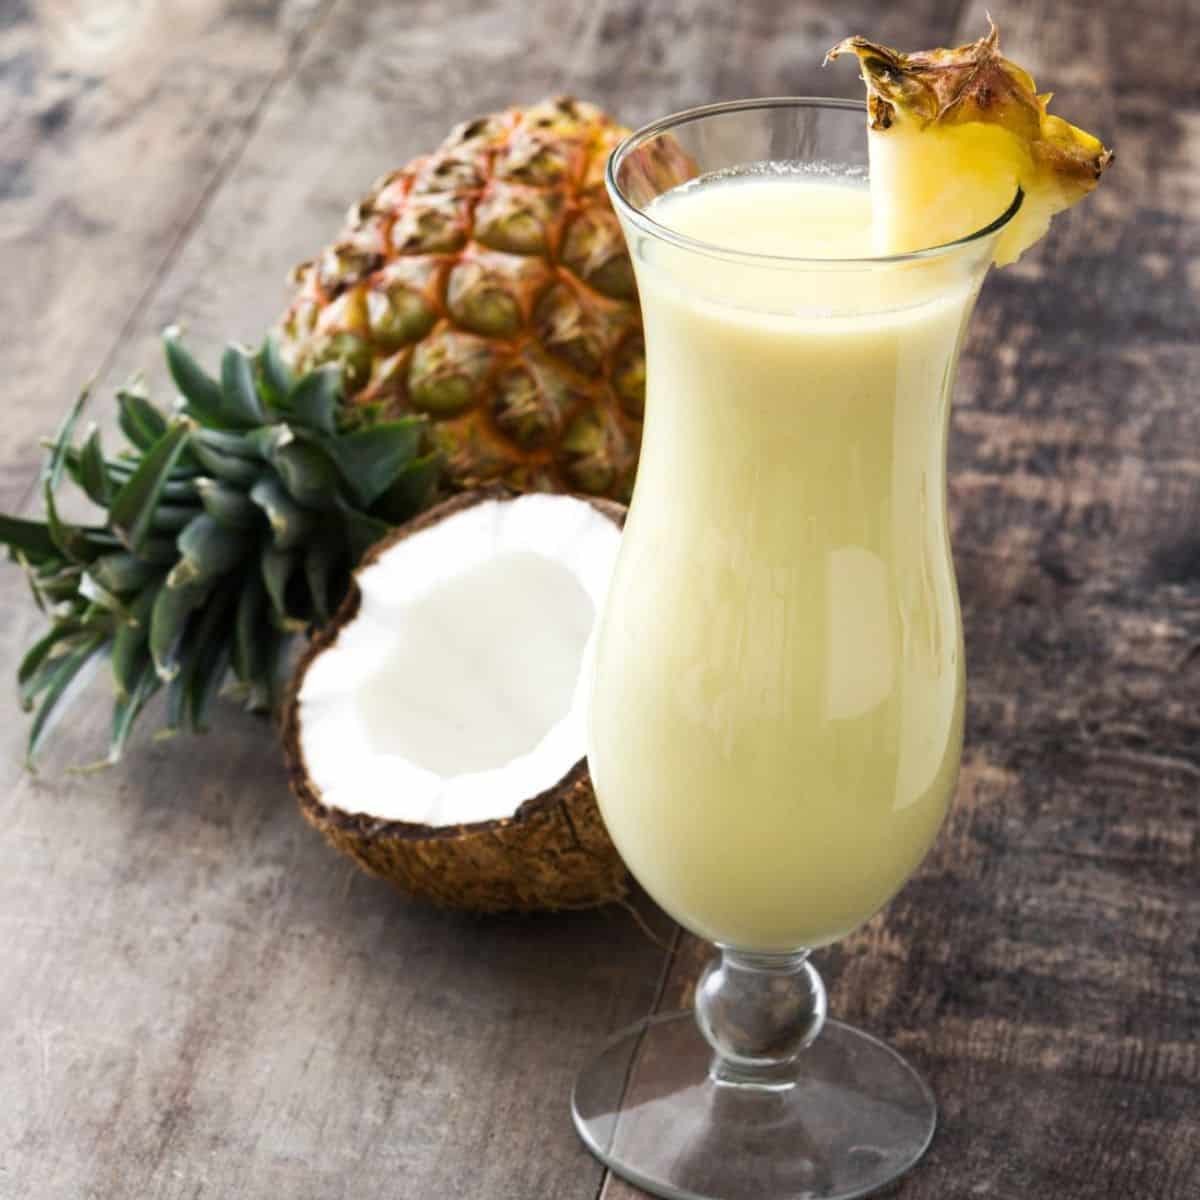 Cocktail sans alcool crémeux et savoureux de pina colada dans un grand verre ouragan garni d'un quartier d'ananas.